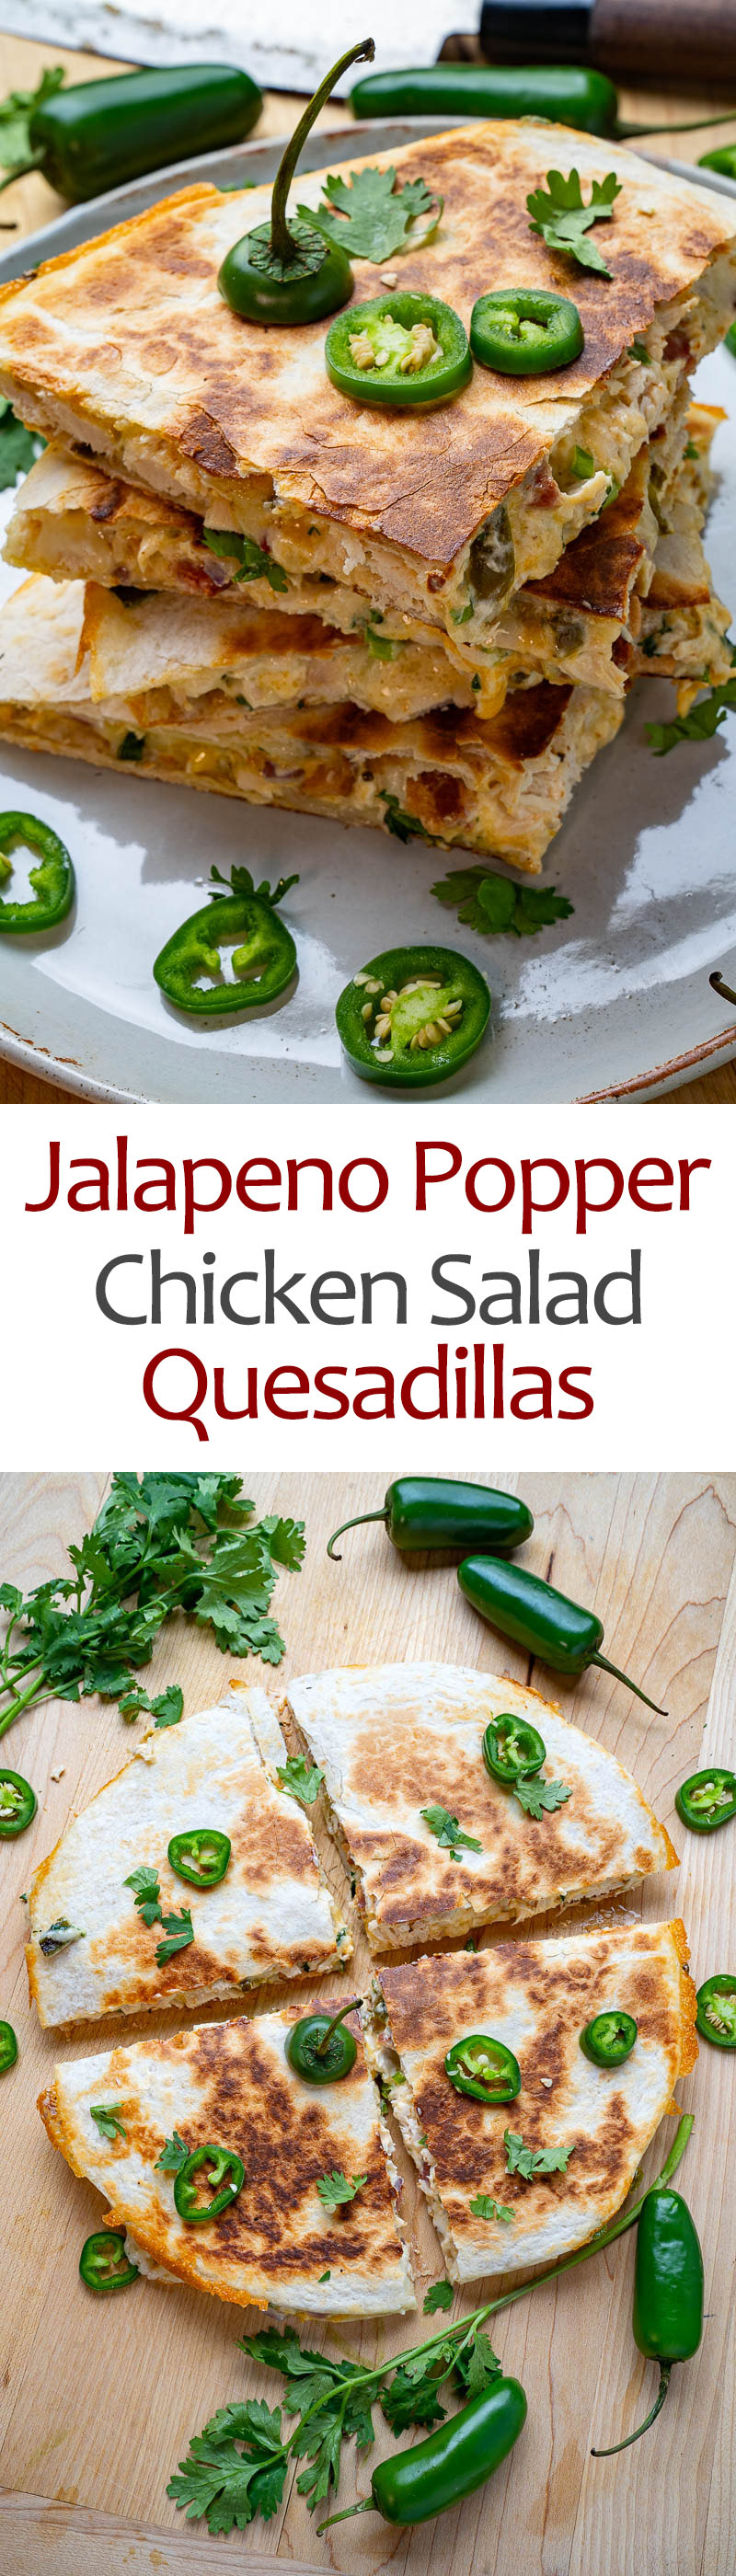 Jalapeno Popper Chicken Salad Quesadillas